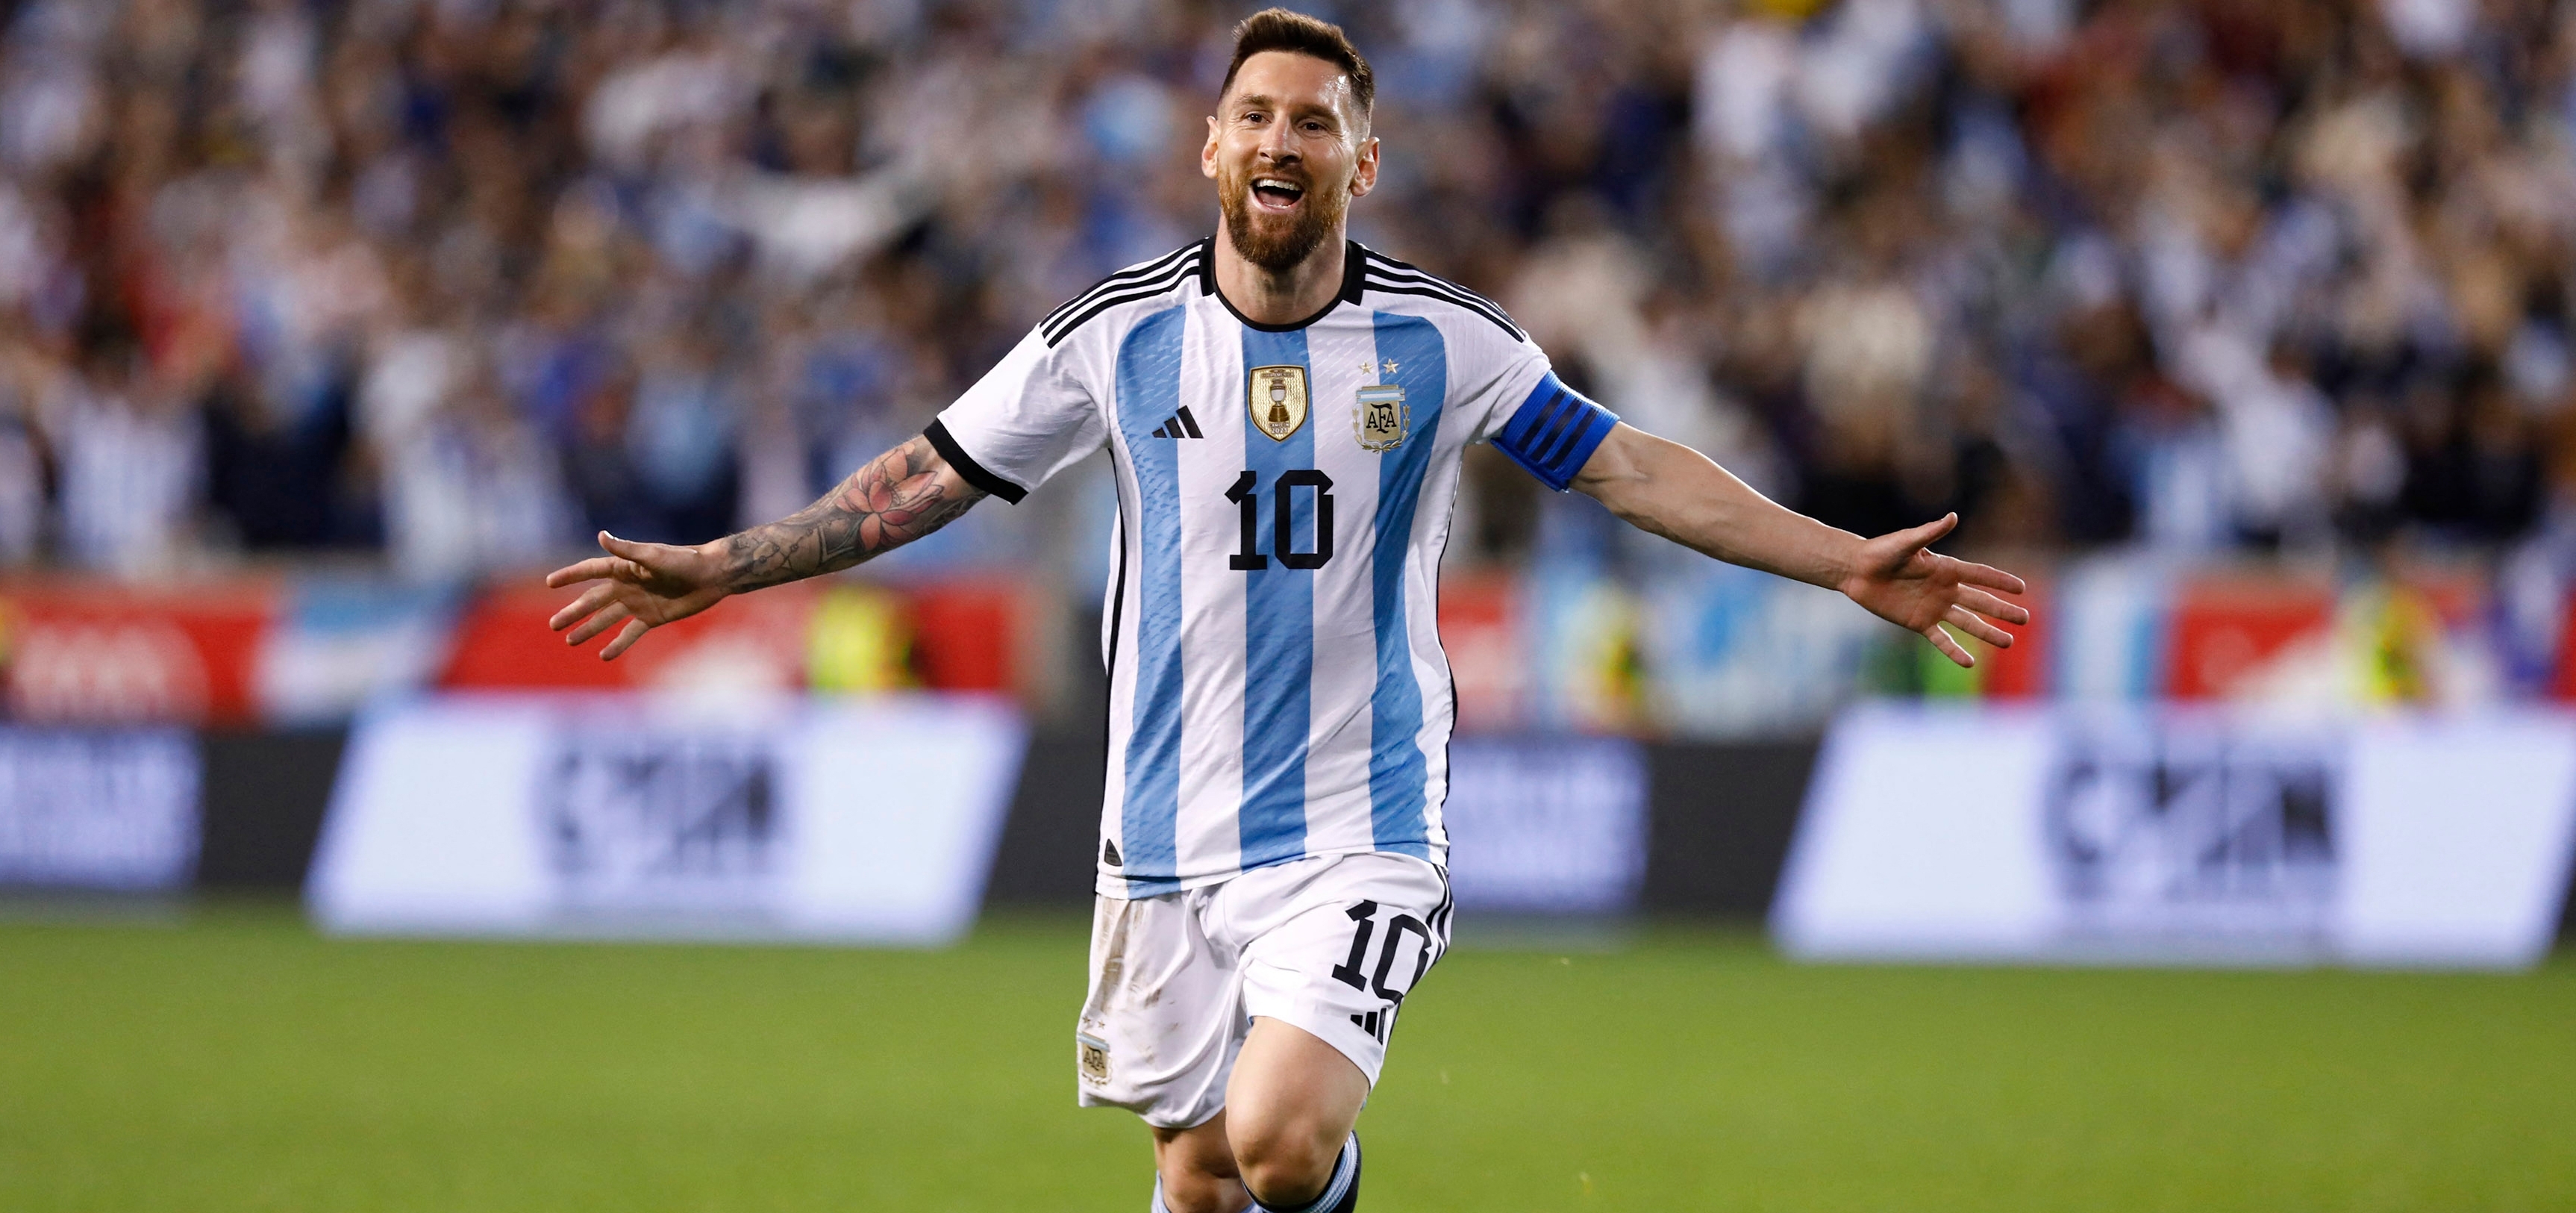 Lo recaudado por la subasta de la camisola de Messi servirá para ayudar a un hospital de niños. (Foto Prensa Libre: AFP)